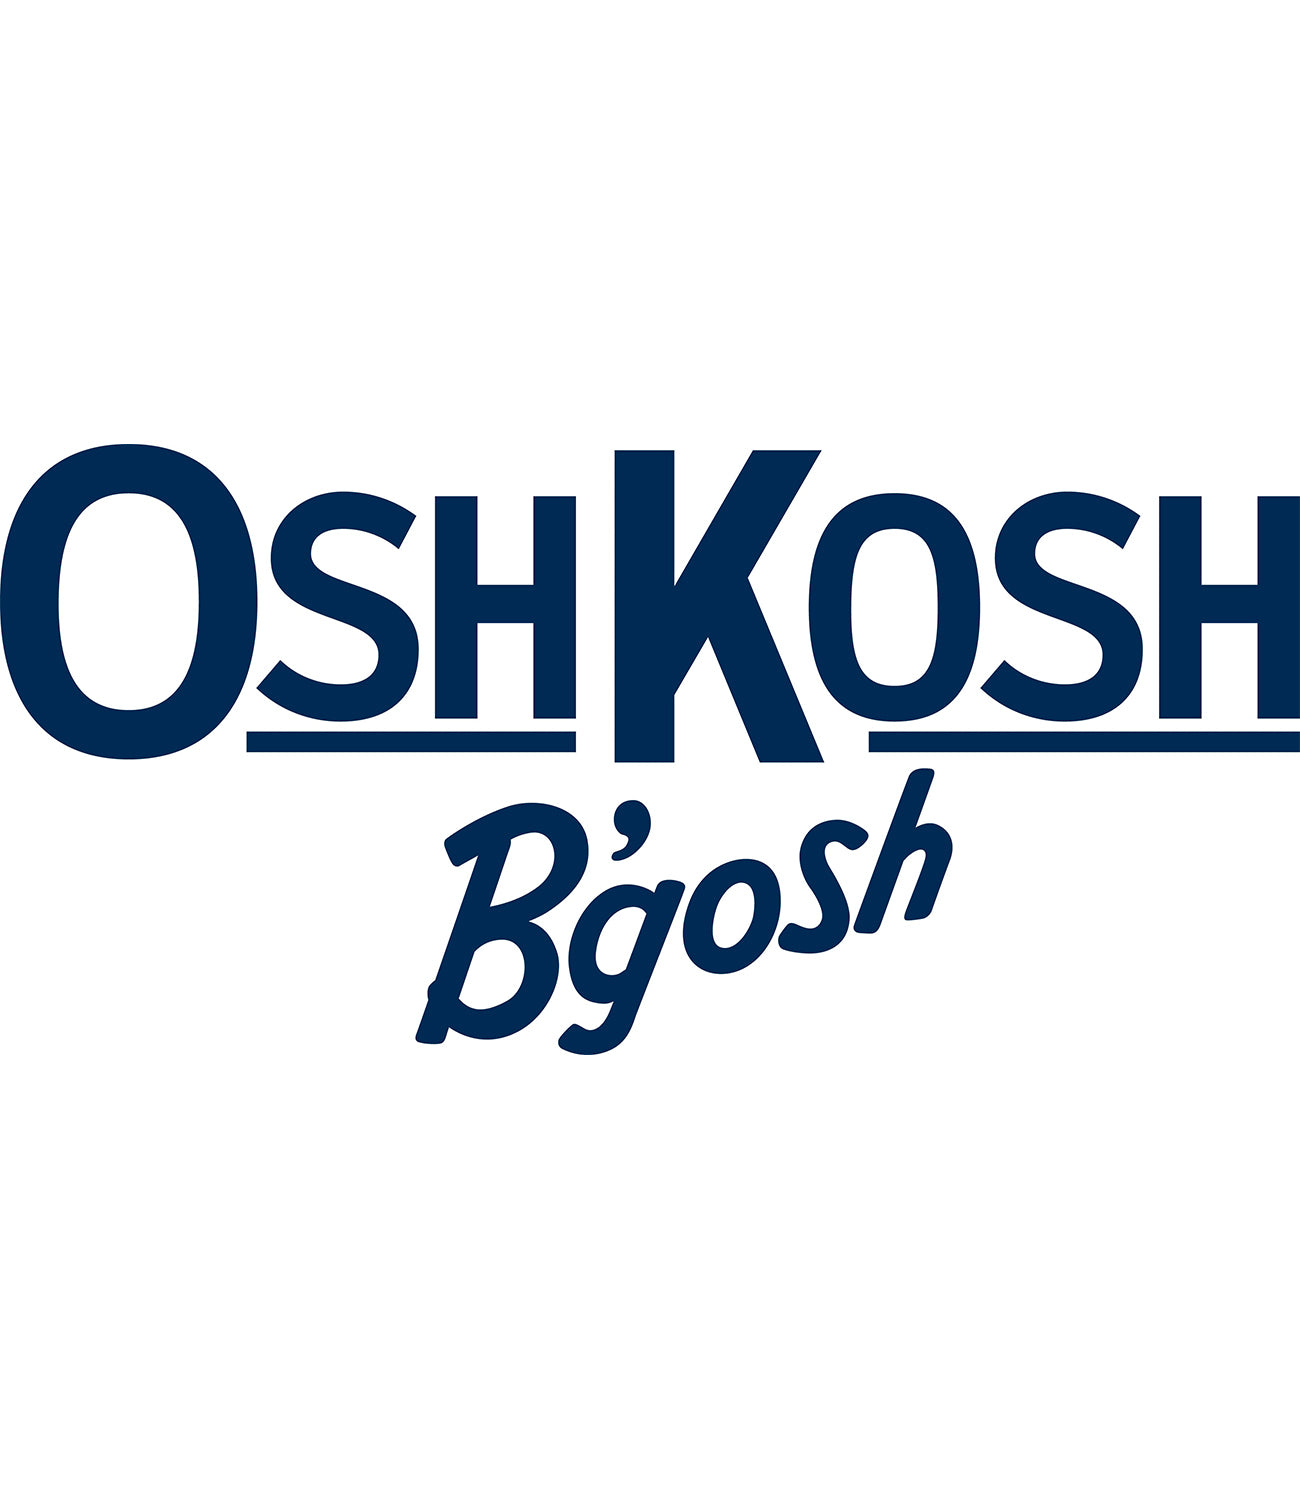 Osh Kosh Girls 2T-6X Colorblock Puffer Jacket